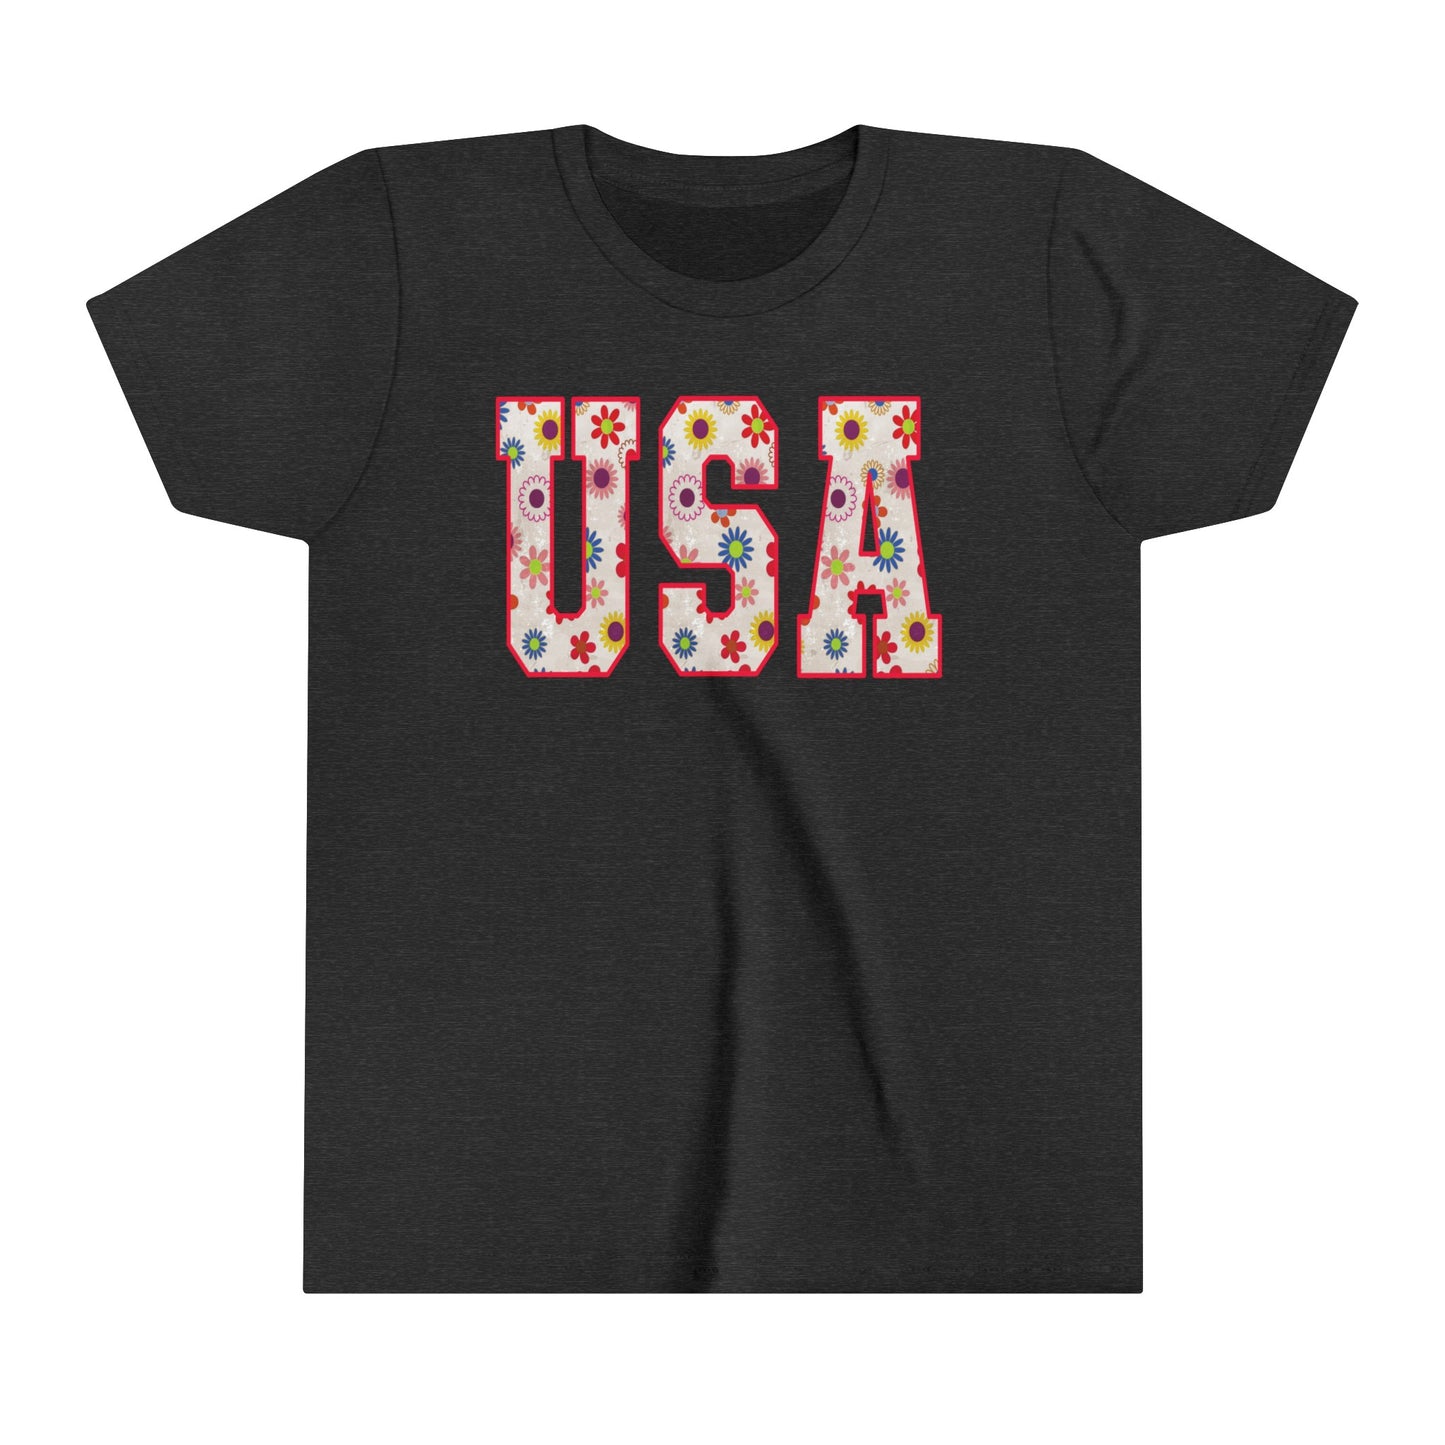 USA 4th of July USA Youth Shirt